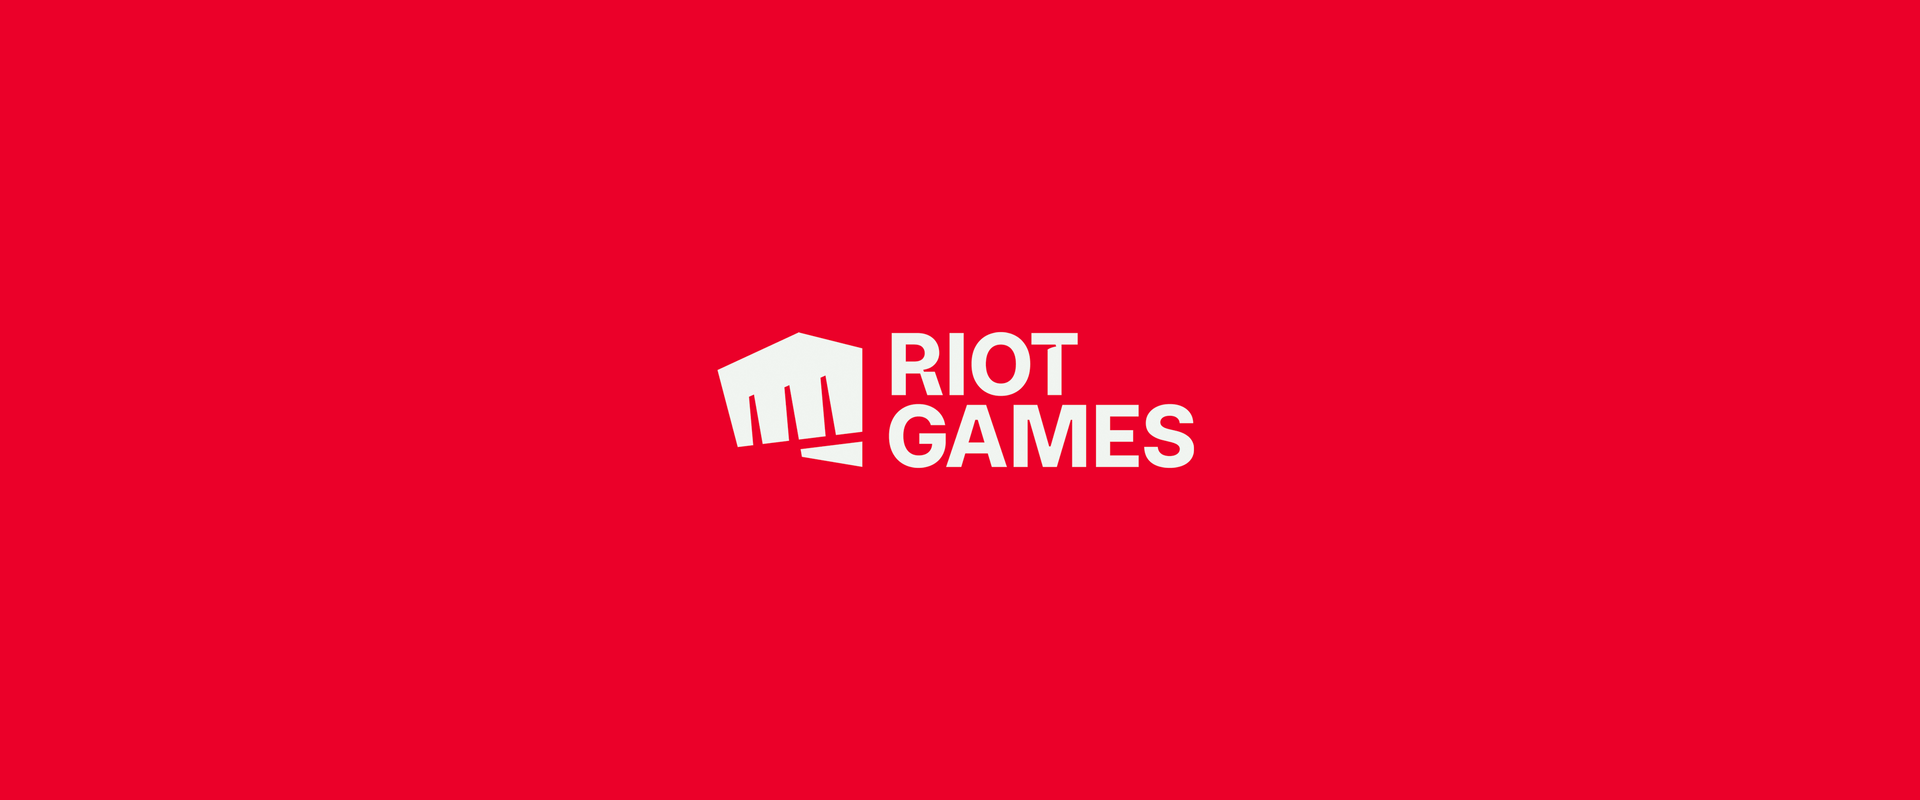 Riot Games Logo Image